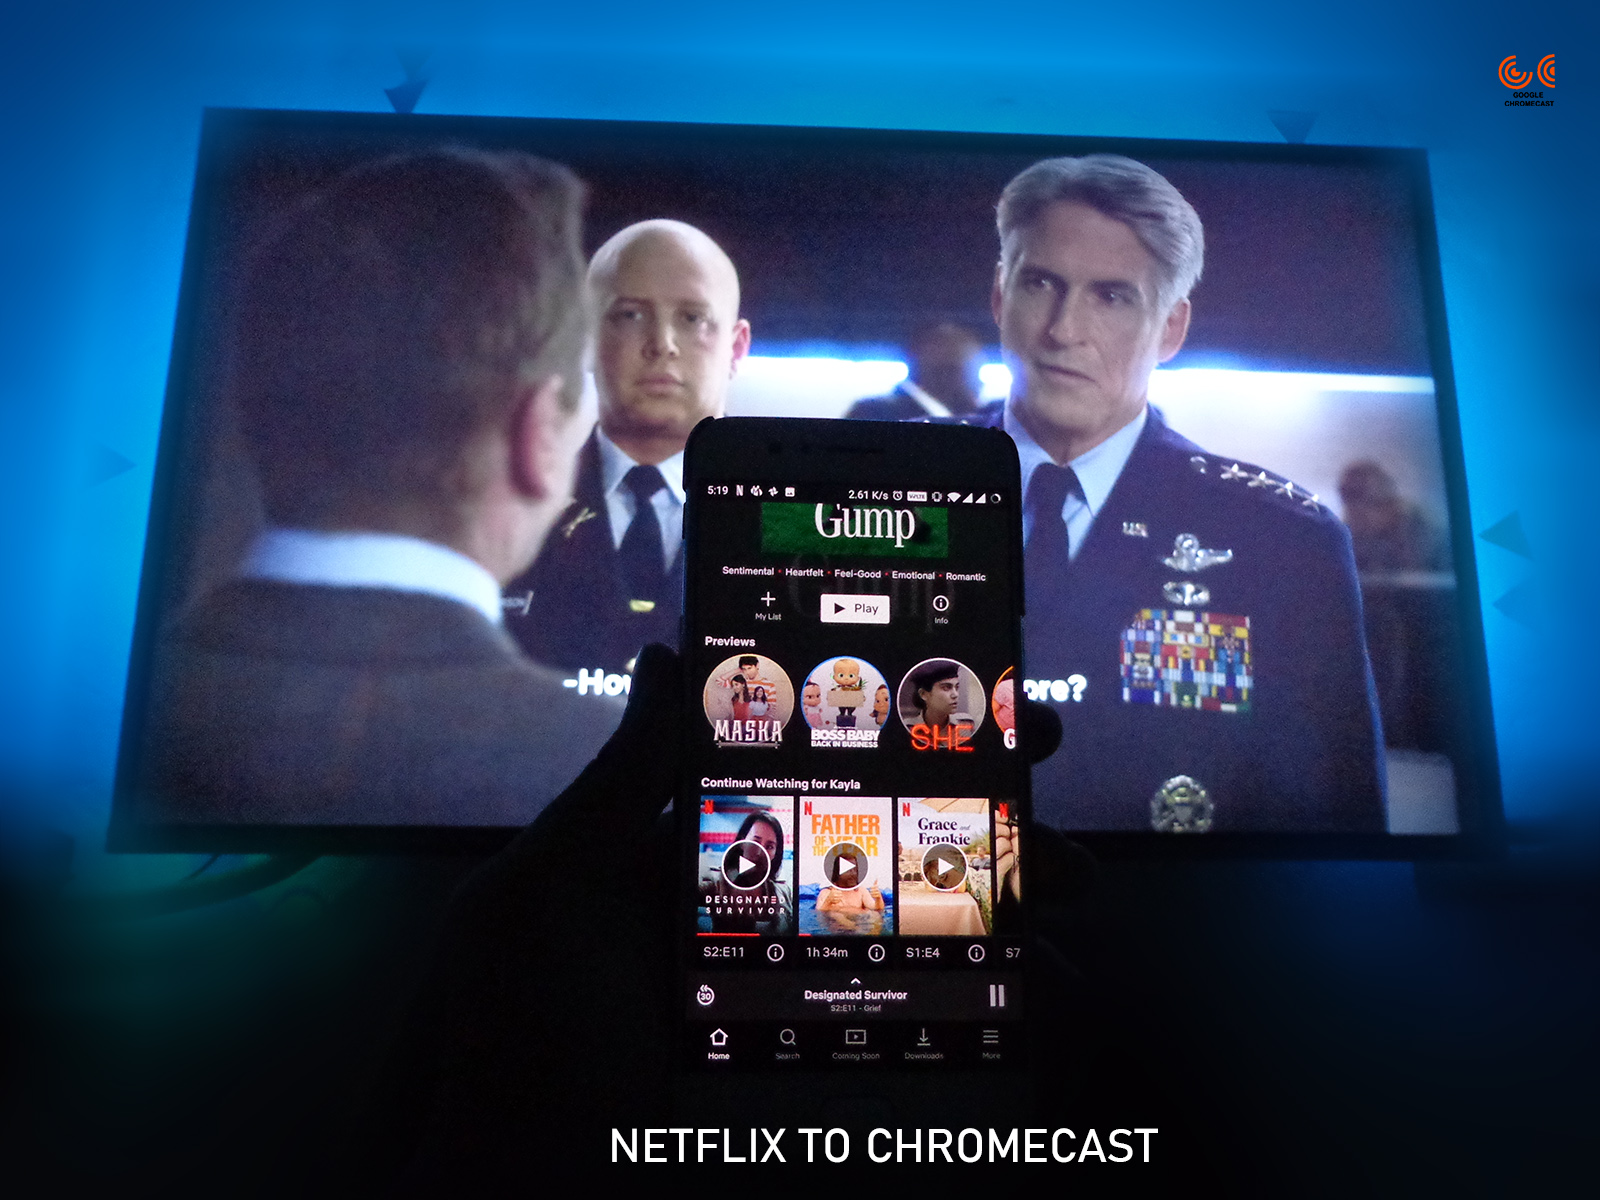 to cast on Chromecast? - GChromecast